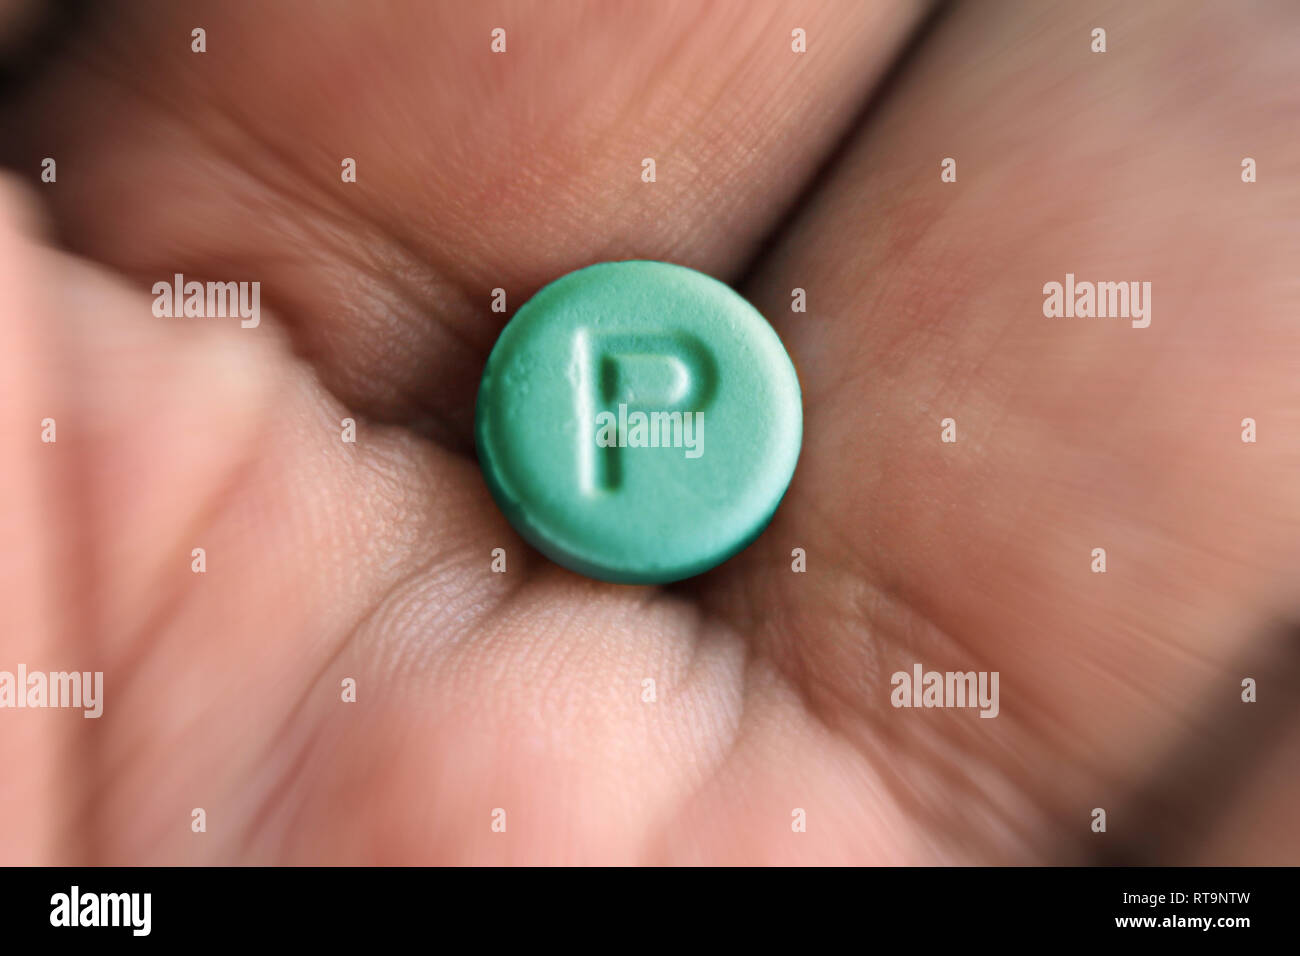 Comprimé avec lettre P logo placebo dans la paume de la main, close-up Banque D'Images